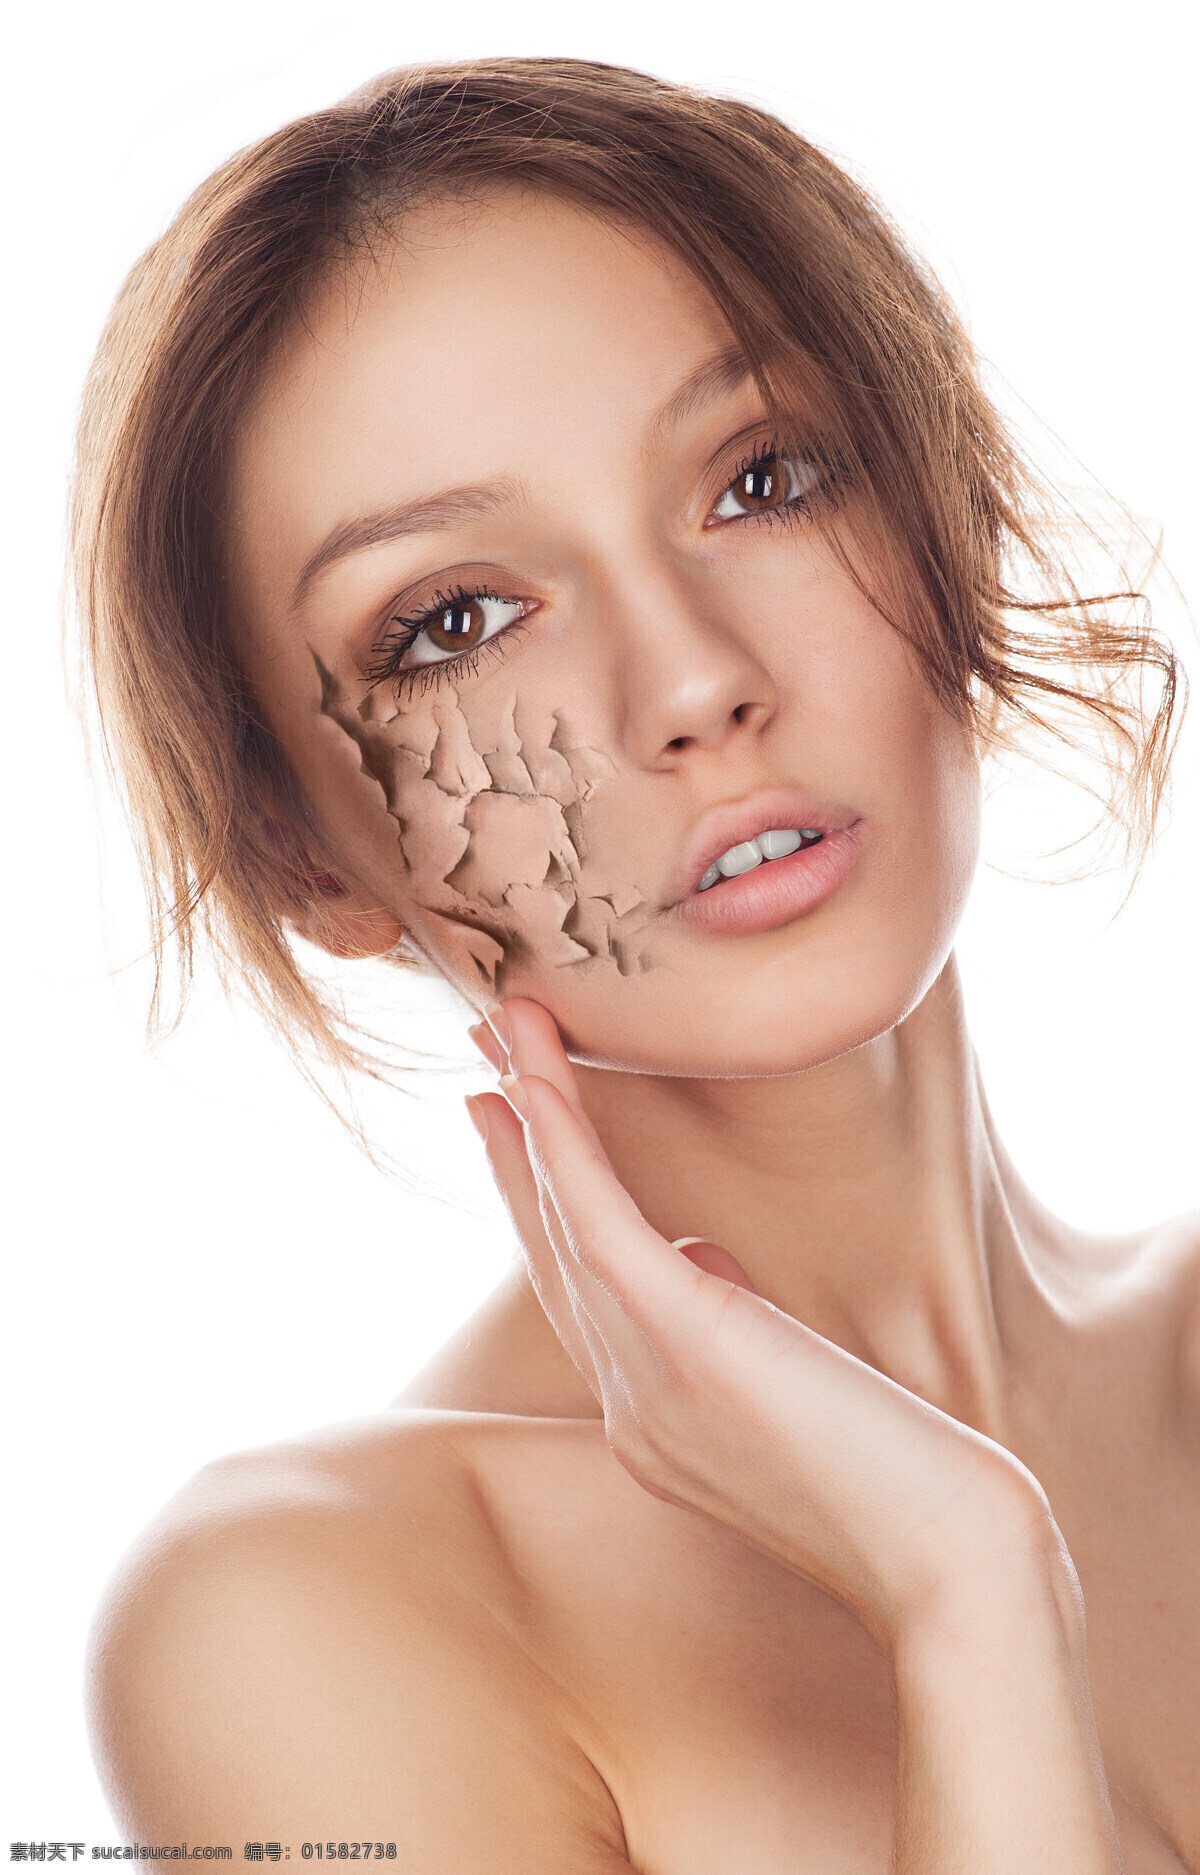 美女 皮肤 干燥 起皮 对比 图 女性 年轻 肌肤 干裂 人体 其他人物 人物图片